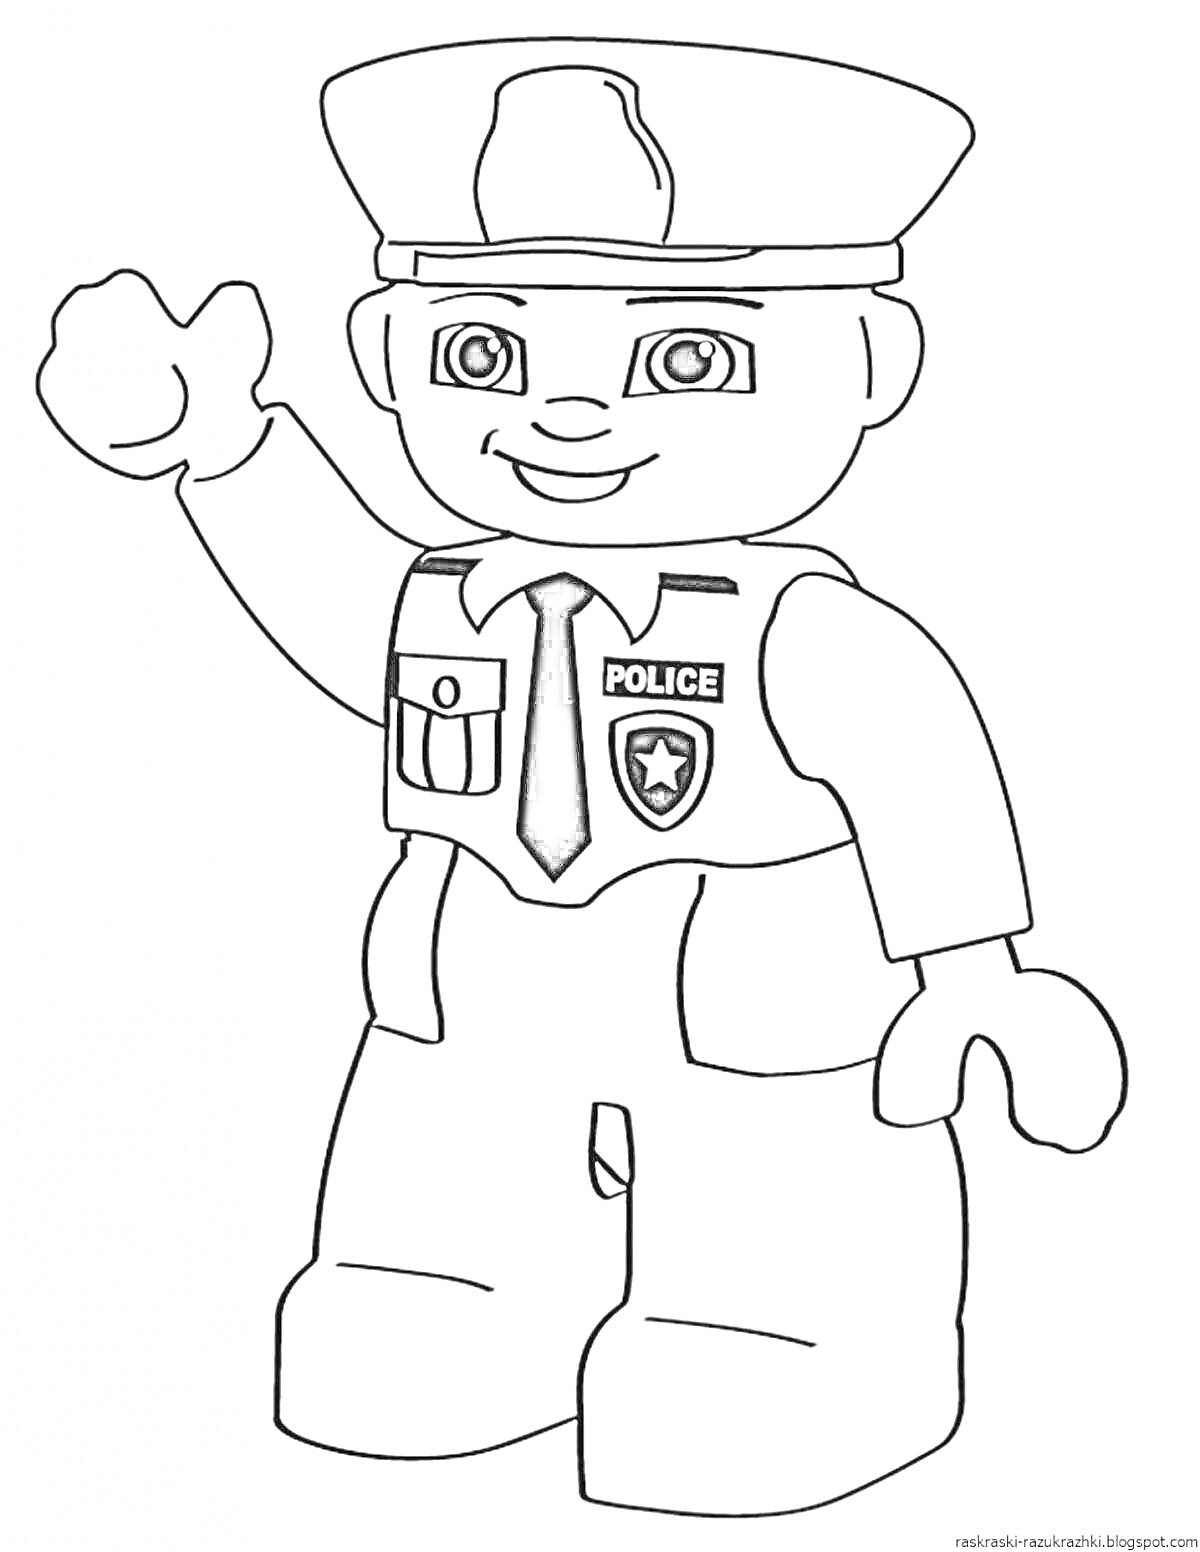 Раскраска Полицейский в форме с приветственным жестом (игрушечный стиль), элементы: полицейская форма, полицейская кепка, значок, галстук, надпись 